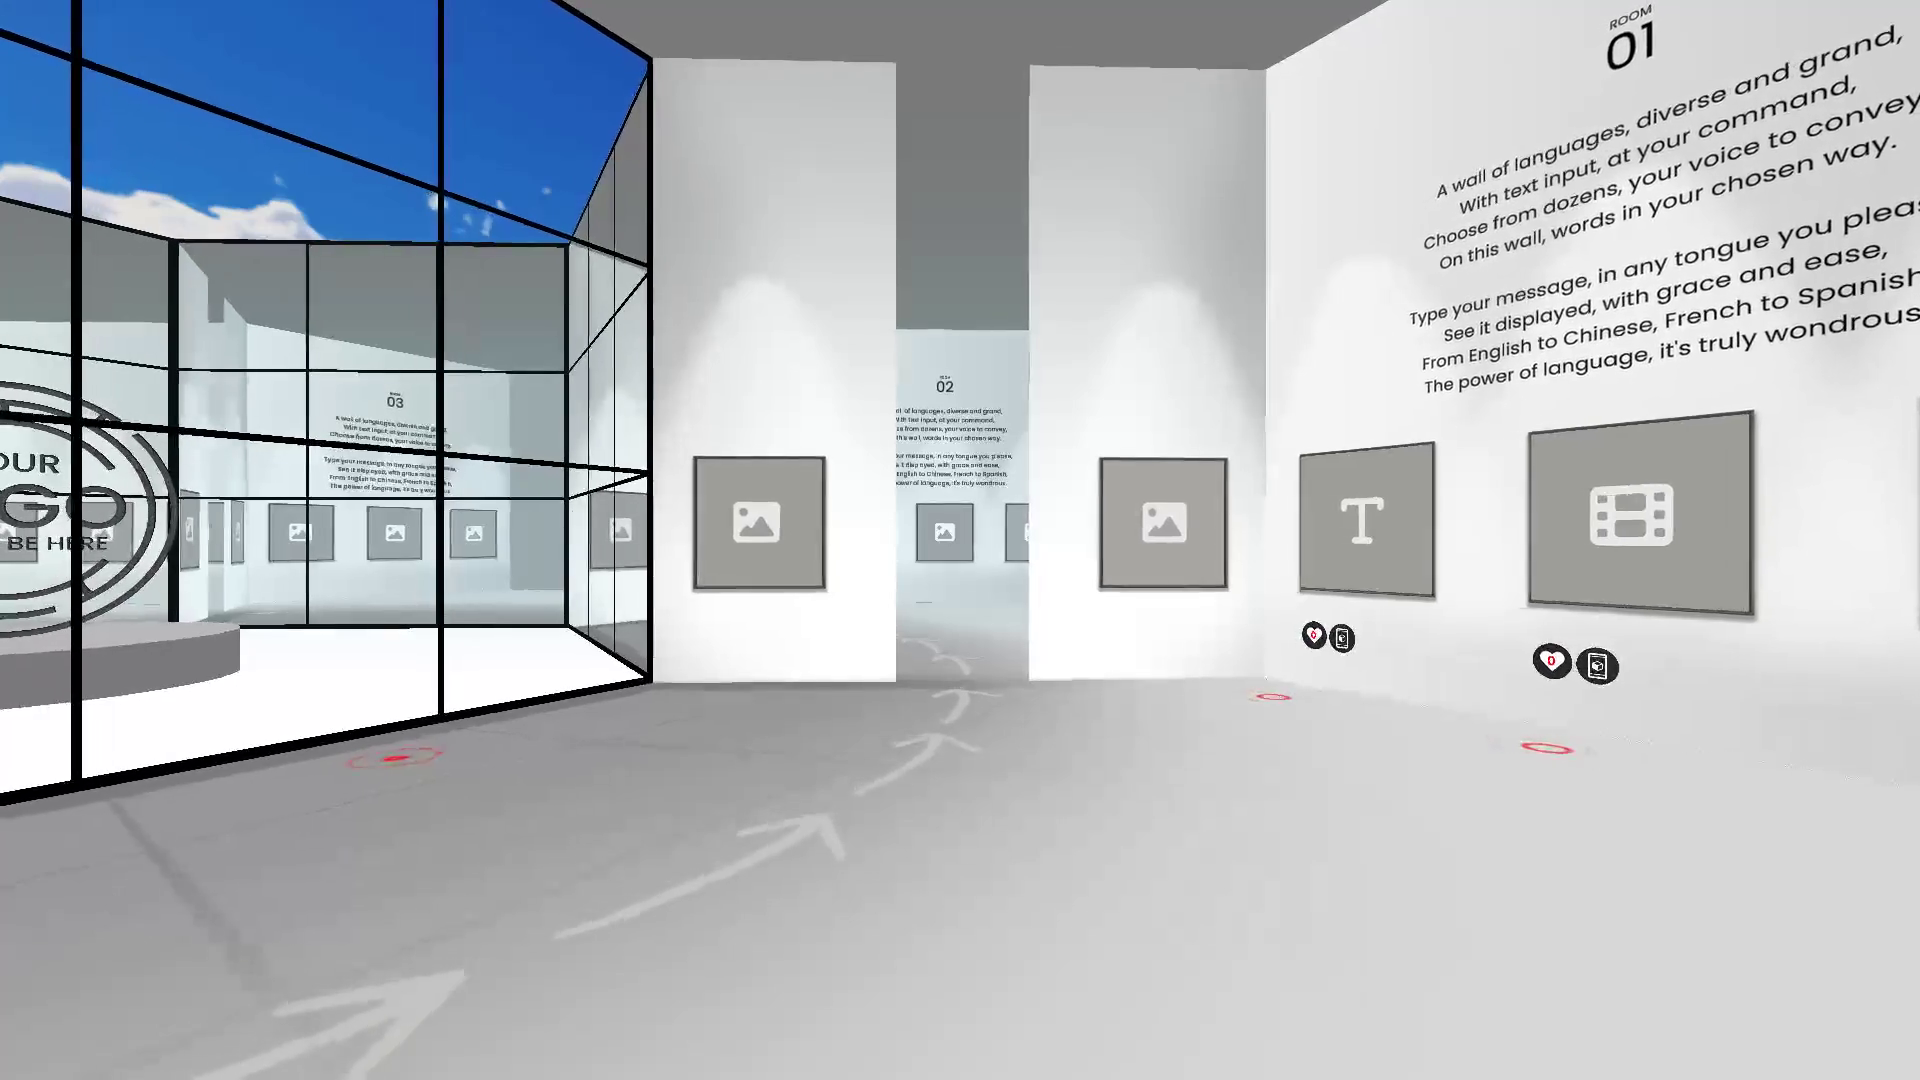 VR Gallery